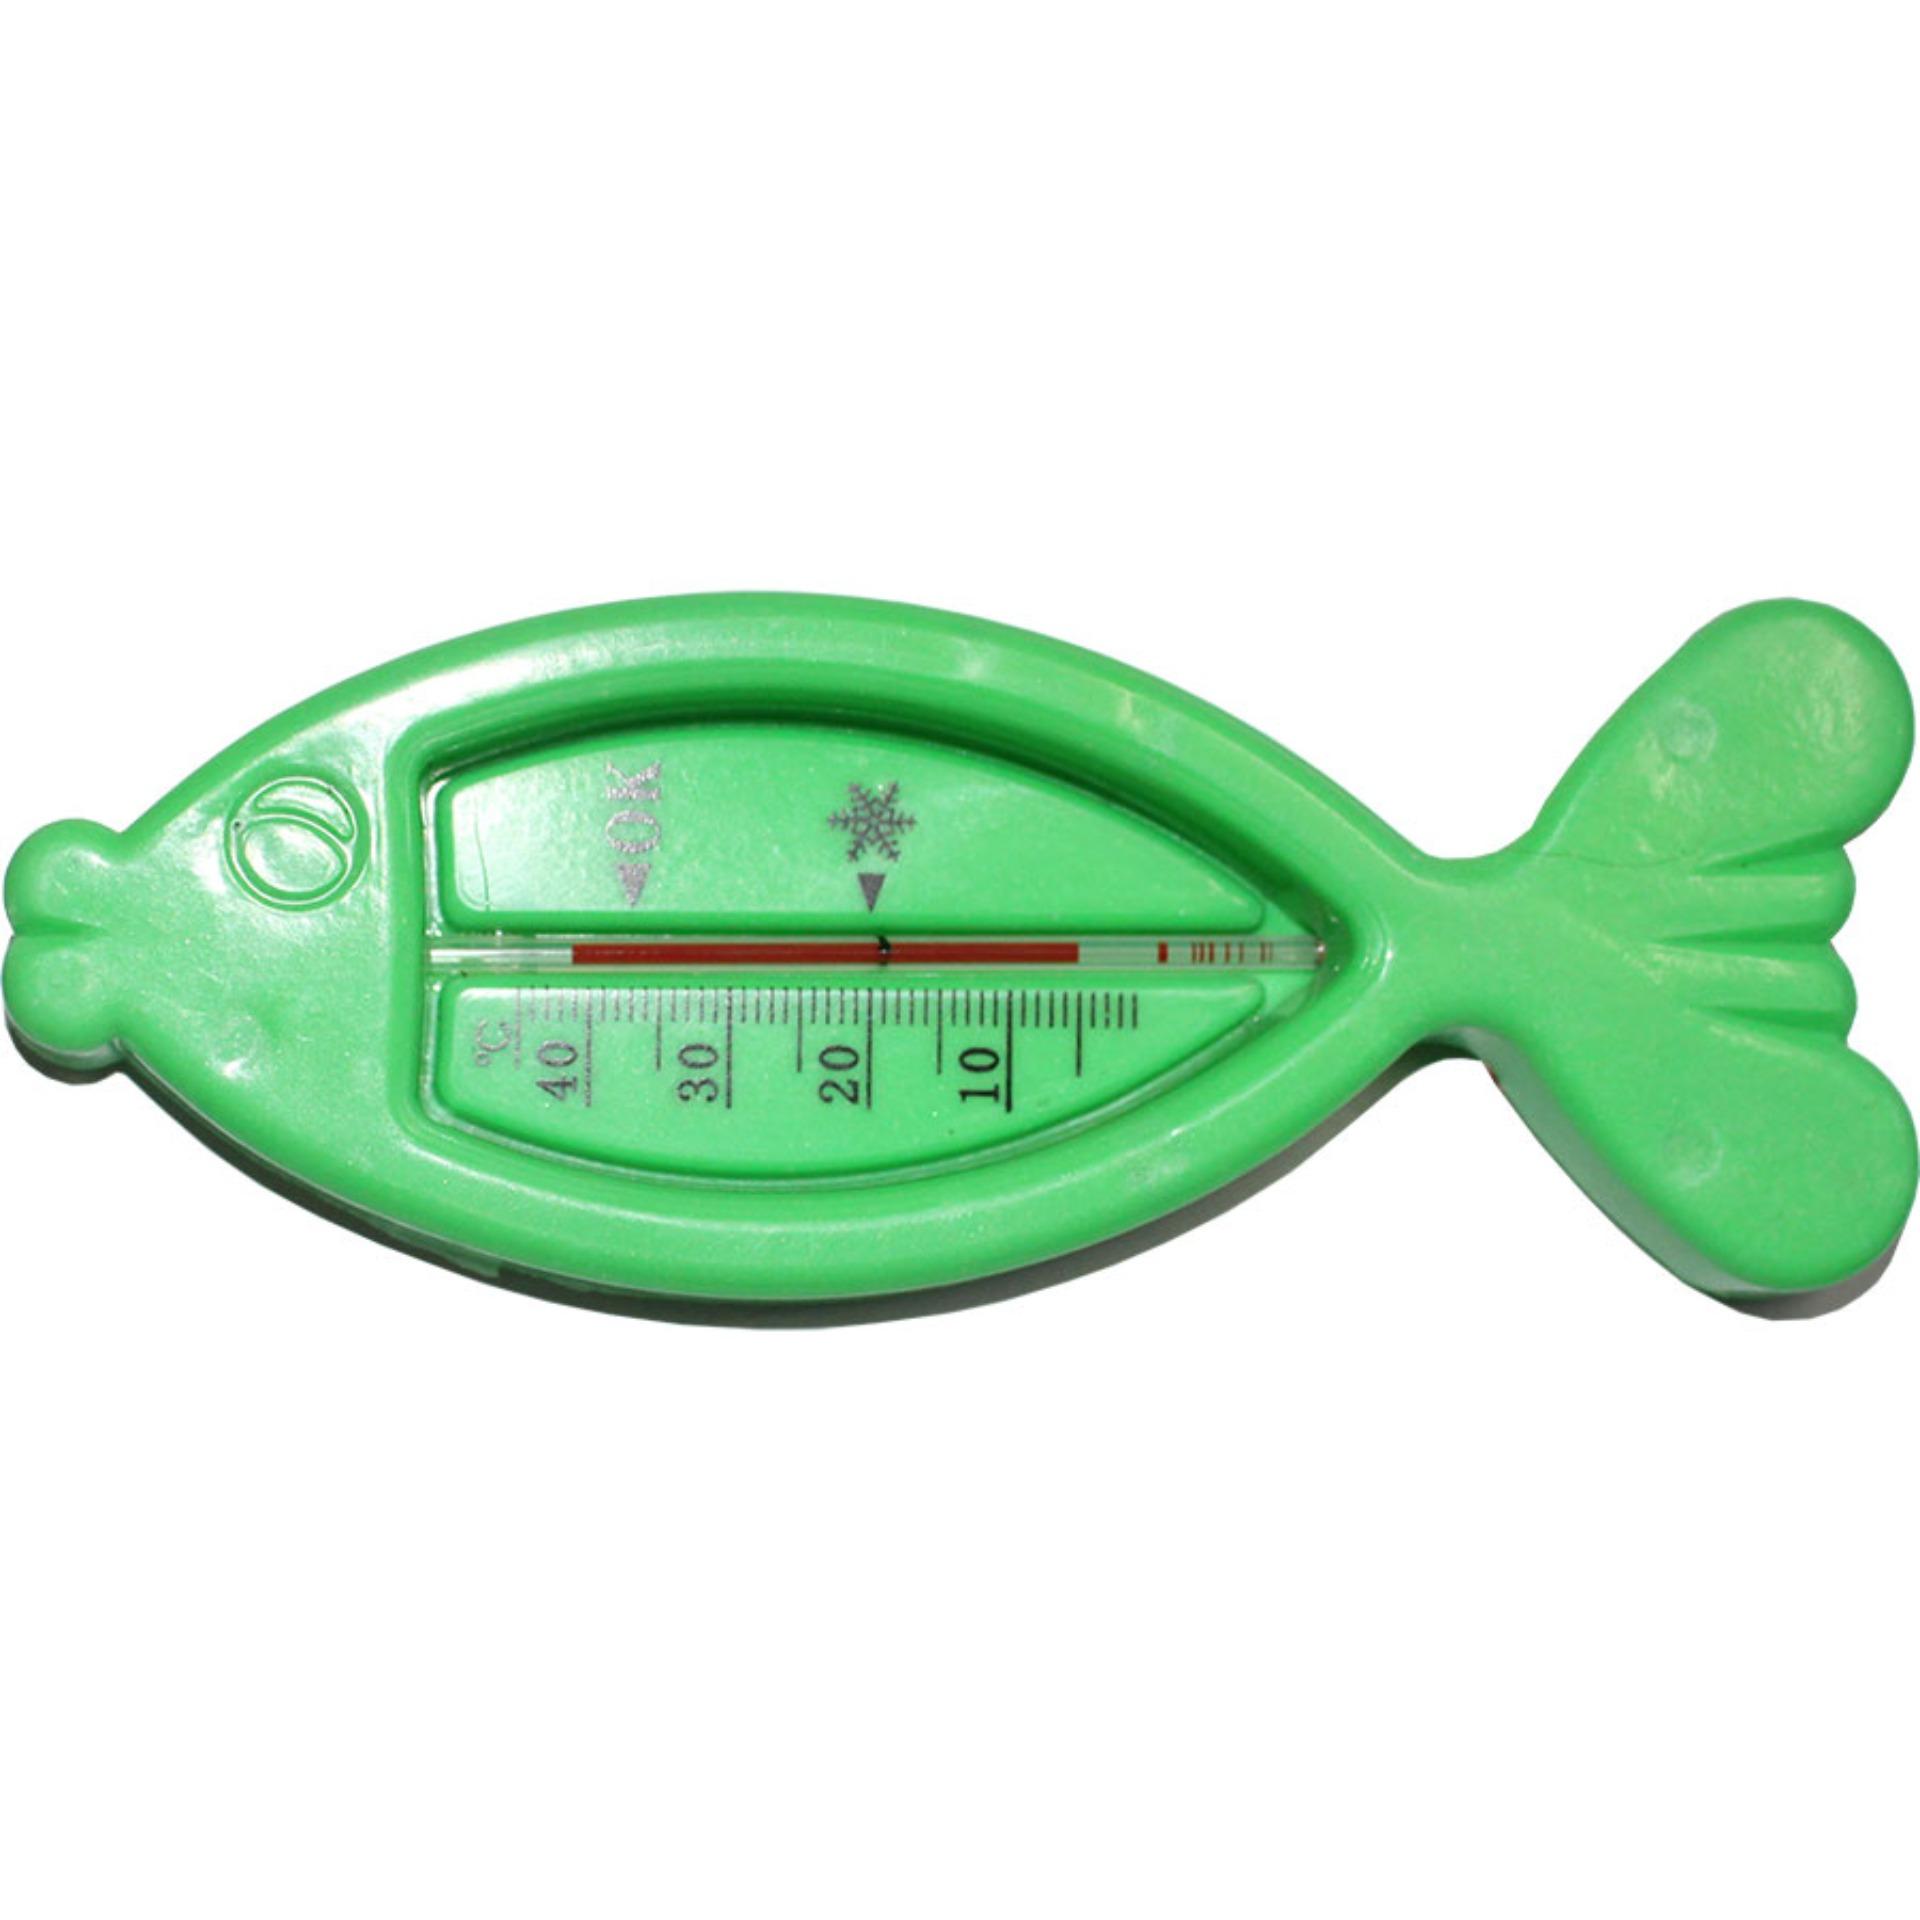 Nhiệt kế đo nhiệt độ nước tắm cho bé yêu hình con cá